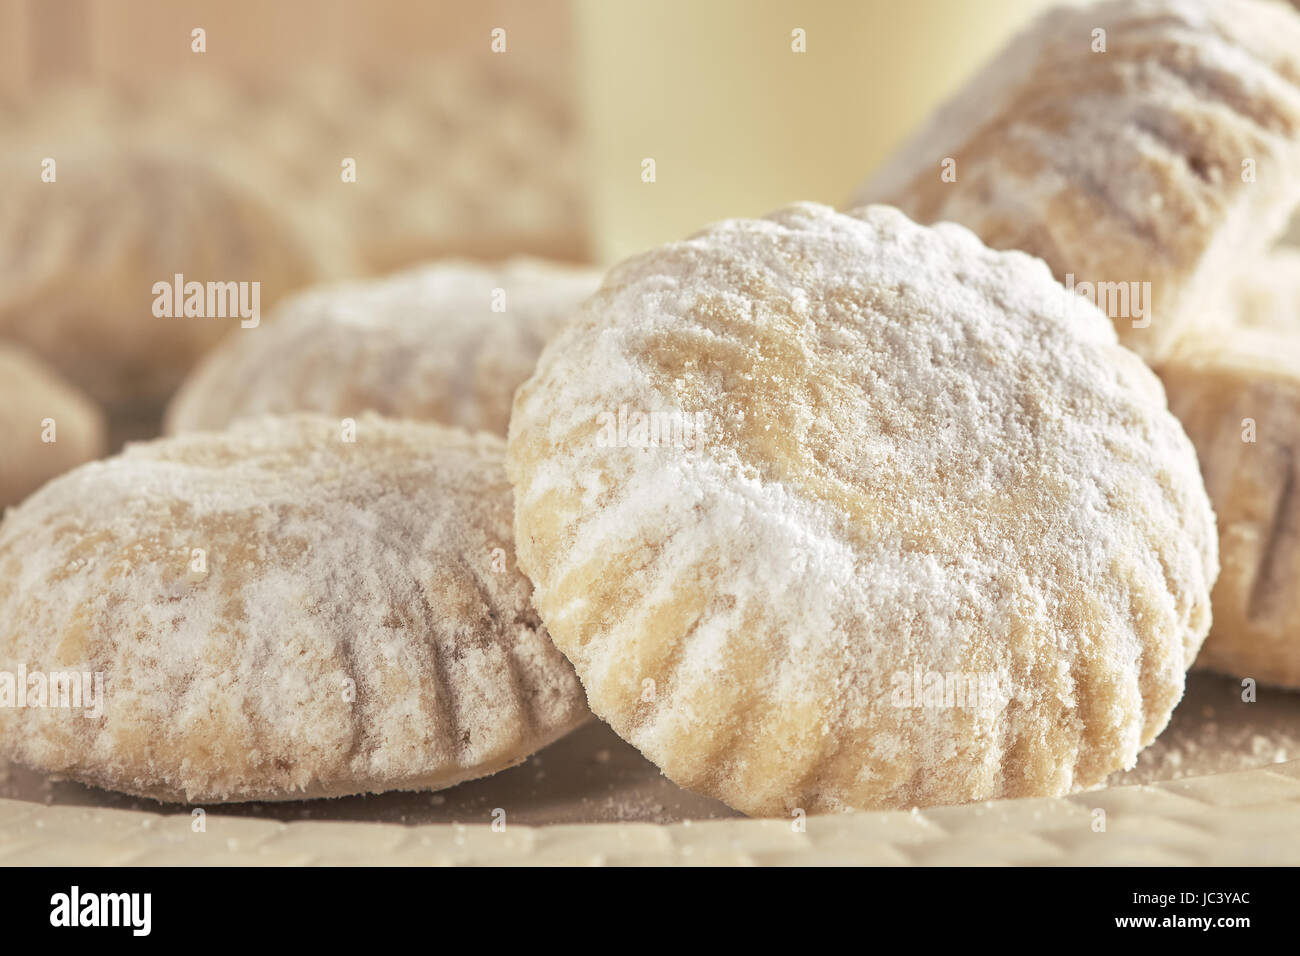 Primo piano della casalinga biscotti frollini ricoperti di zucchero a velo Foto Stock